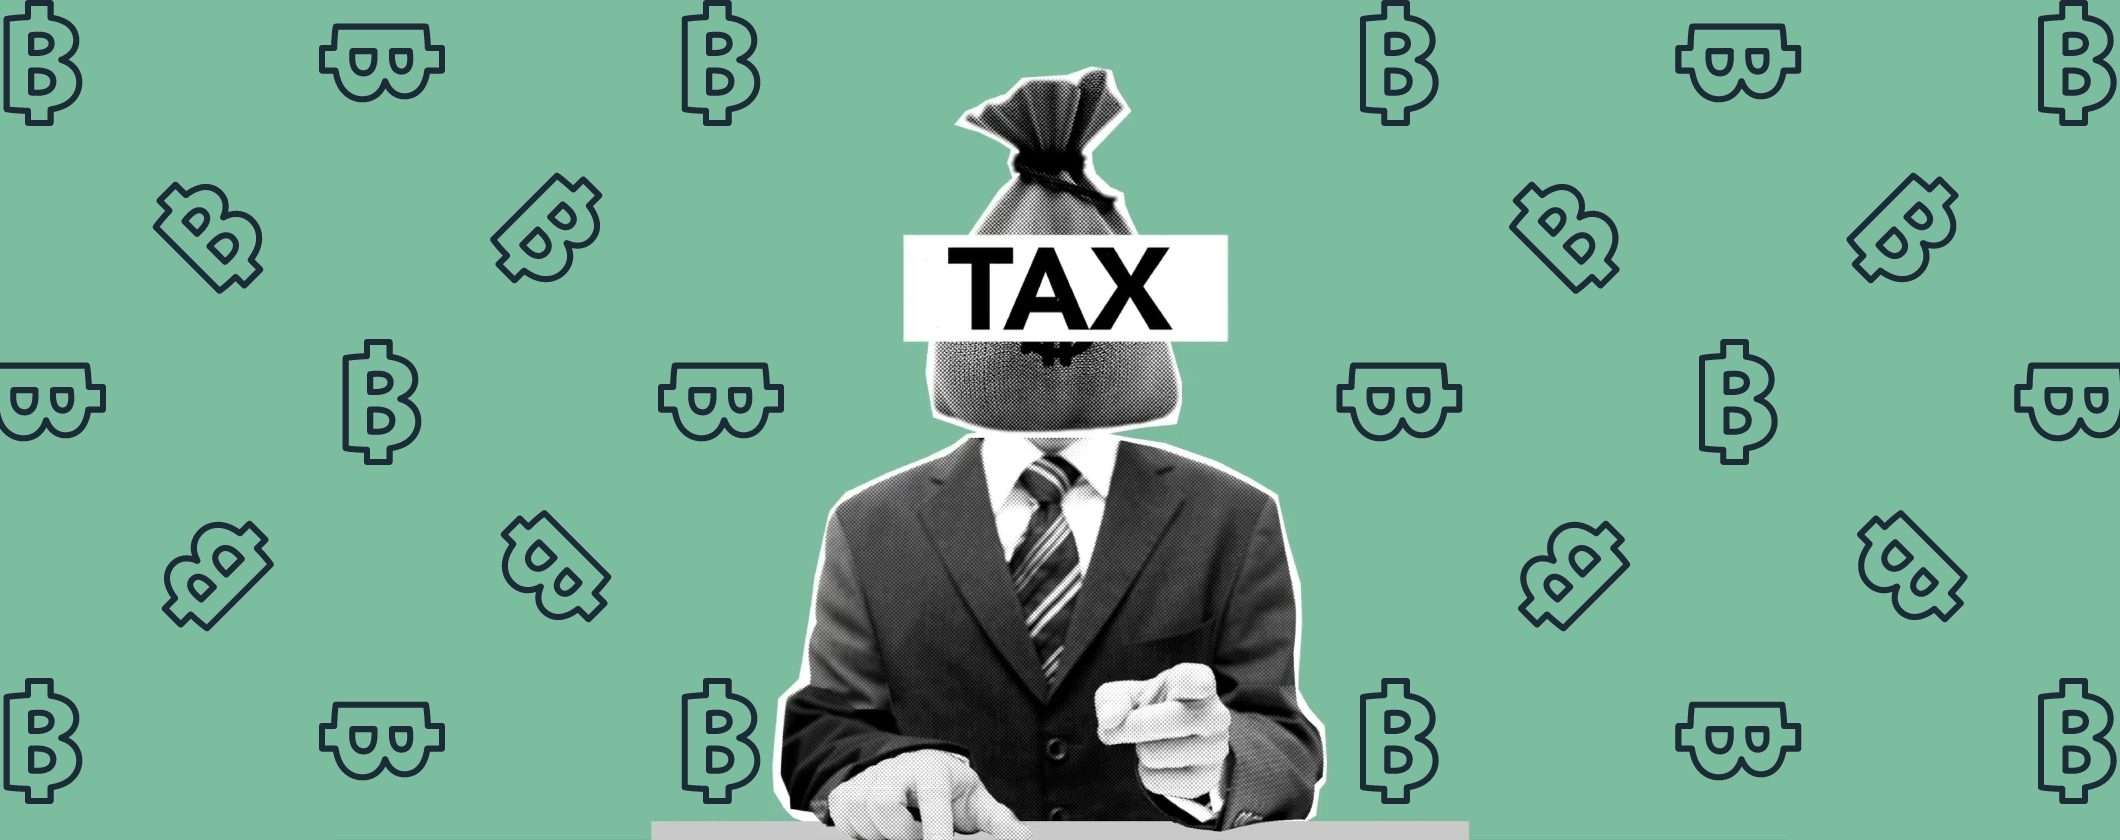 Criptovalute e tasse: controlli a tappeto della Guardia di Finanza